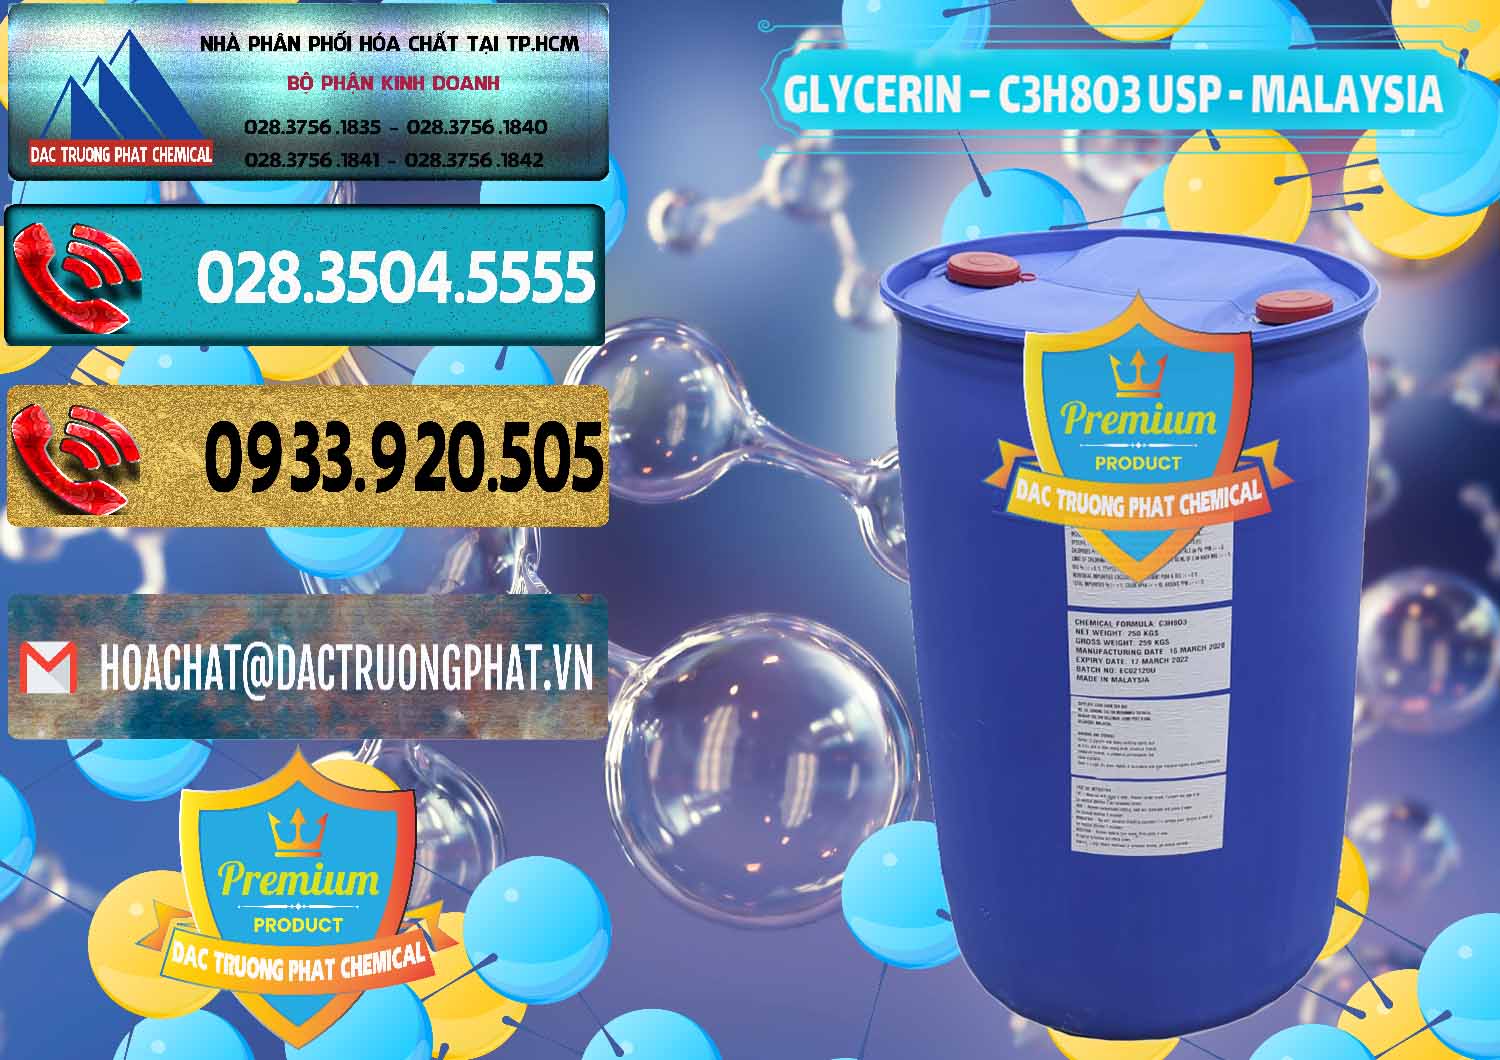 Nơi chuyên phân phối & bán Glycerin – C3H8O3 USP Malaysia - 0233 - Nơi chuyên kinh doanh và phân phối hóa chất tại TP.HCM - hoachatdetnhuom.com